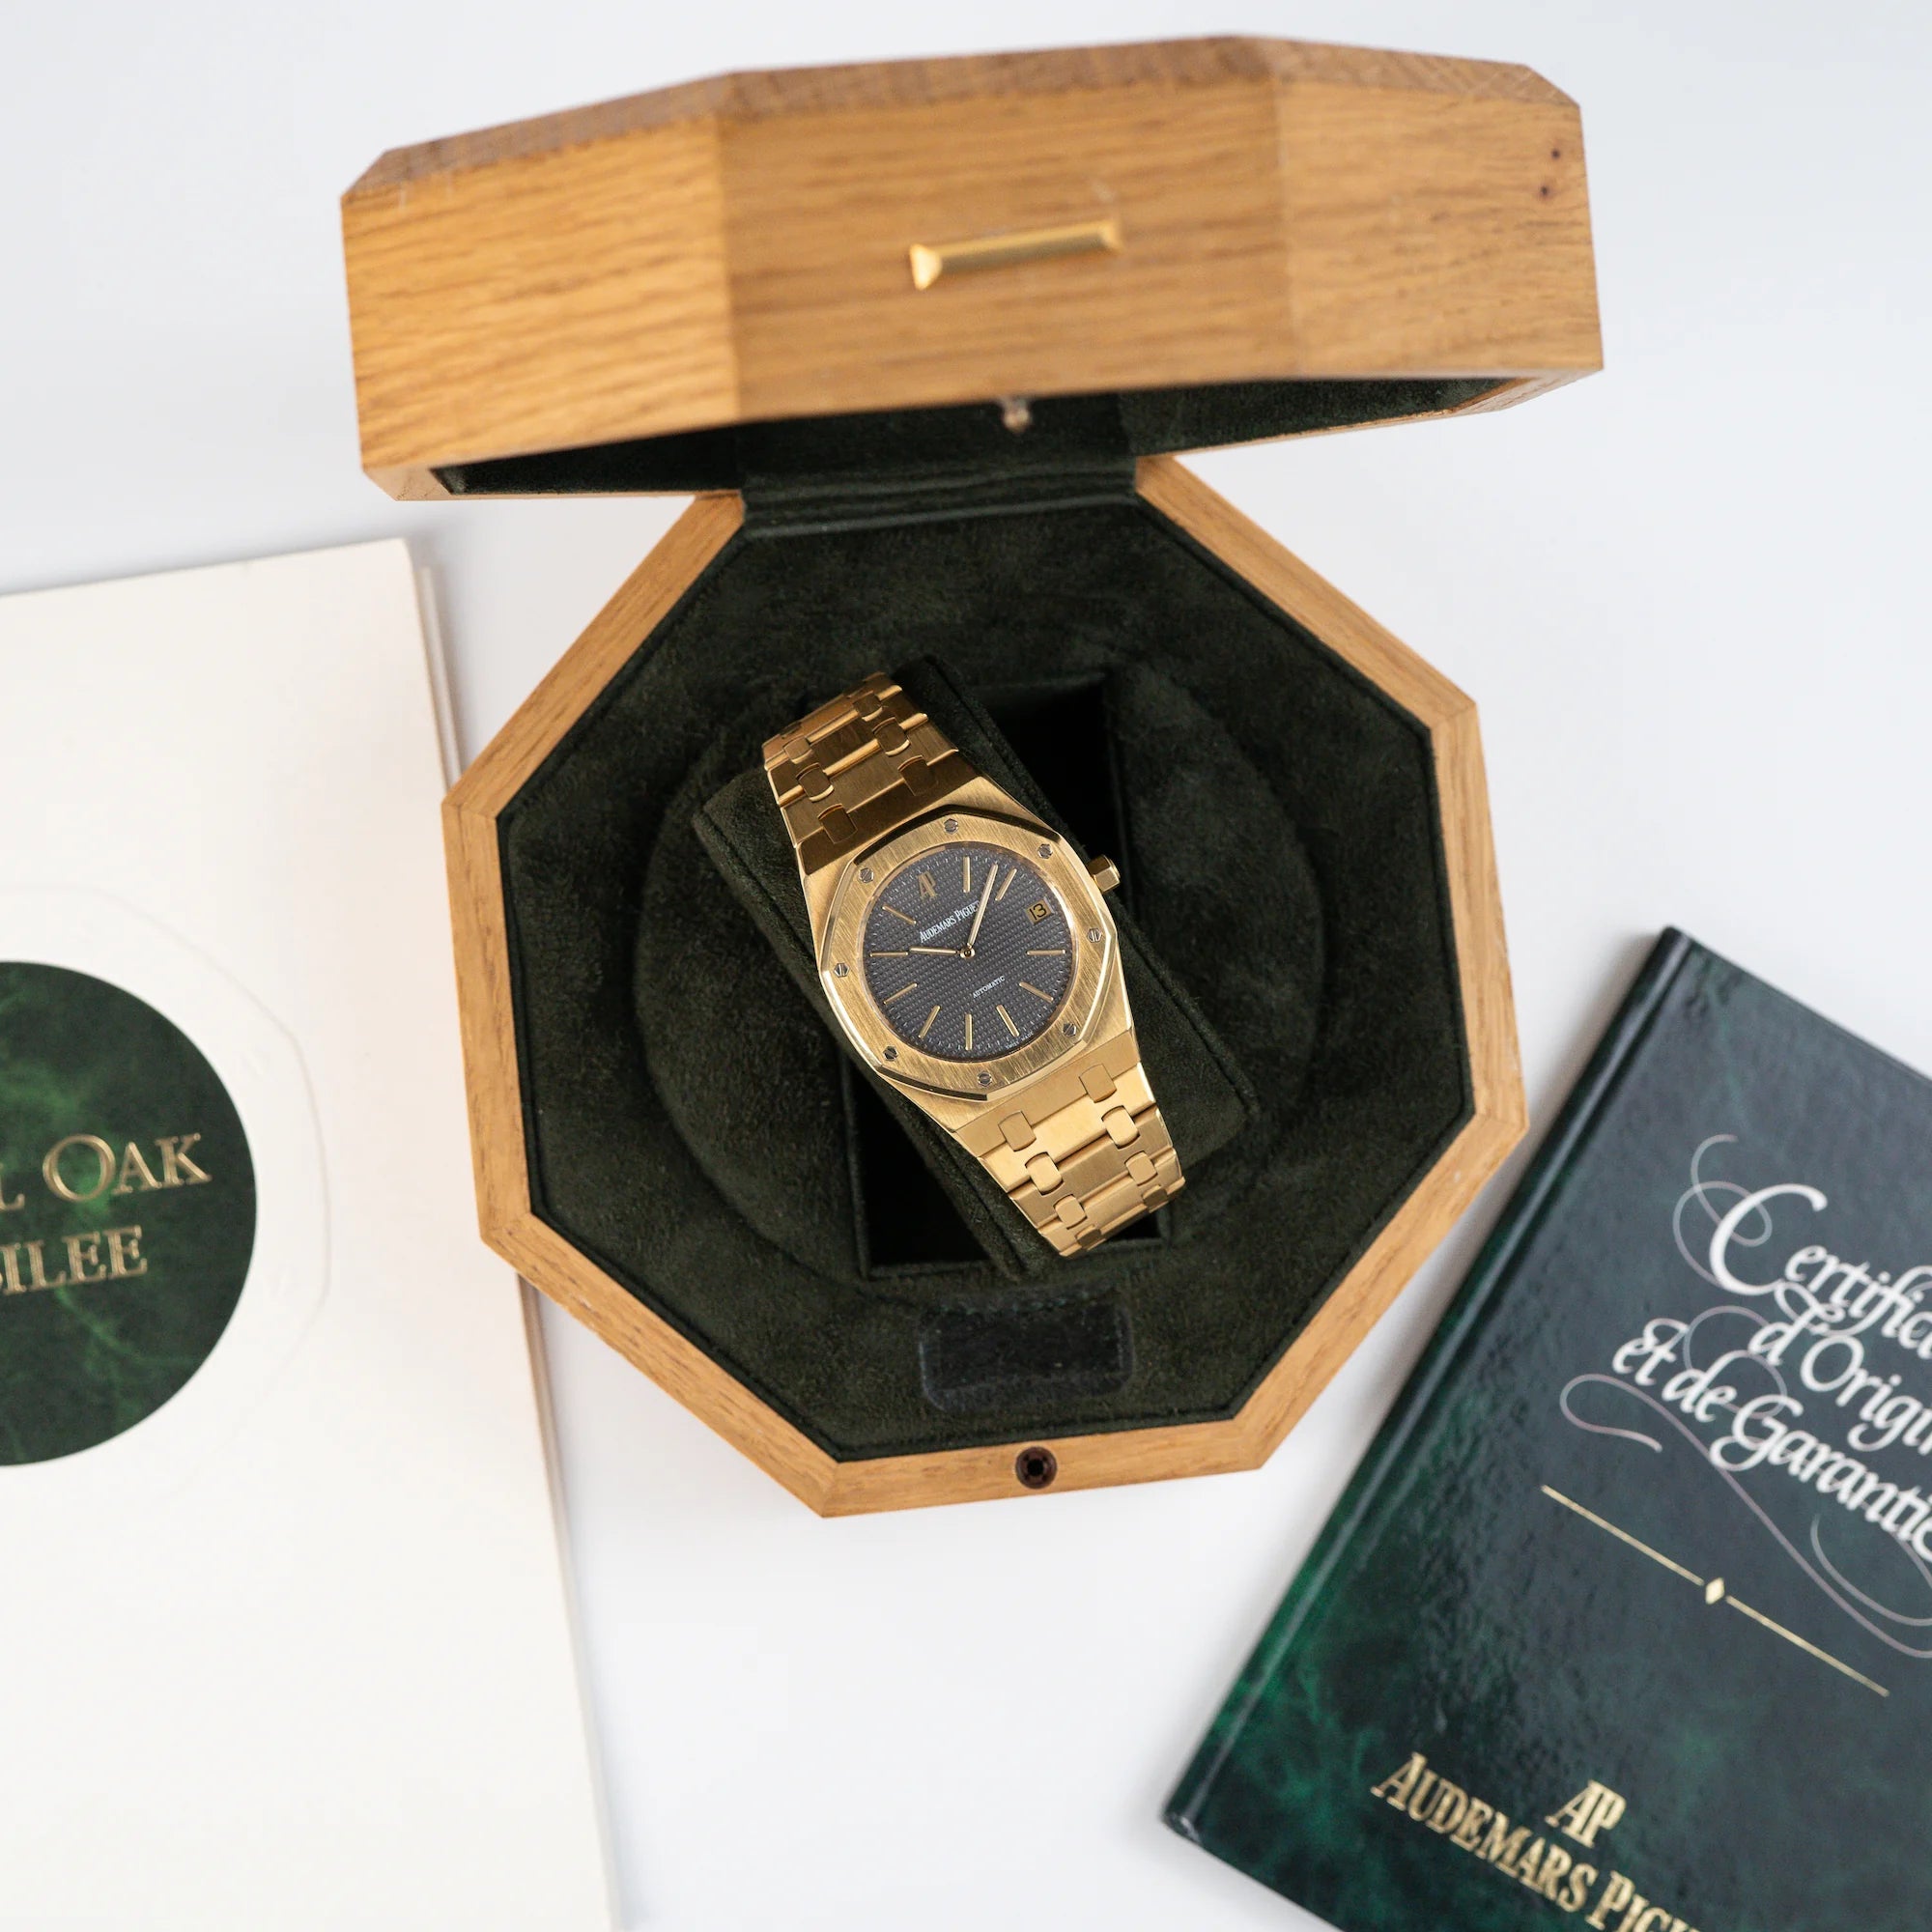 Audemars Piguet Royal Oak Jumbo 14802BA Jubilee in Gelbgold liegt in der Uhrenbox aus Holz und daneben liegt der Lieferumfang, bestehend aus Zertifikat und Booklet